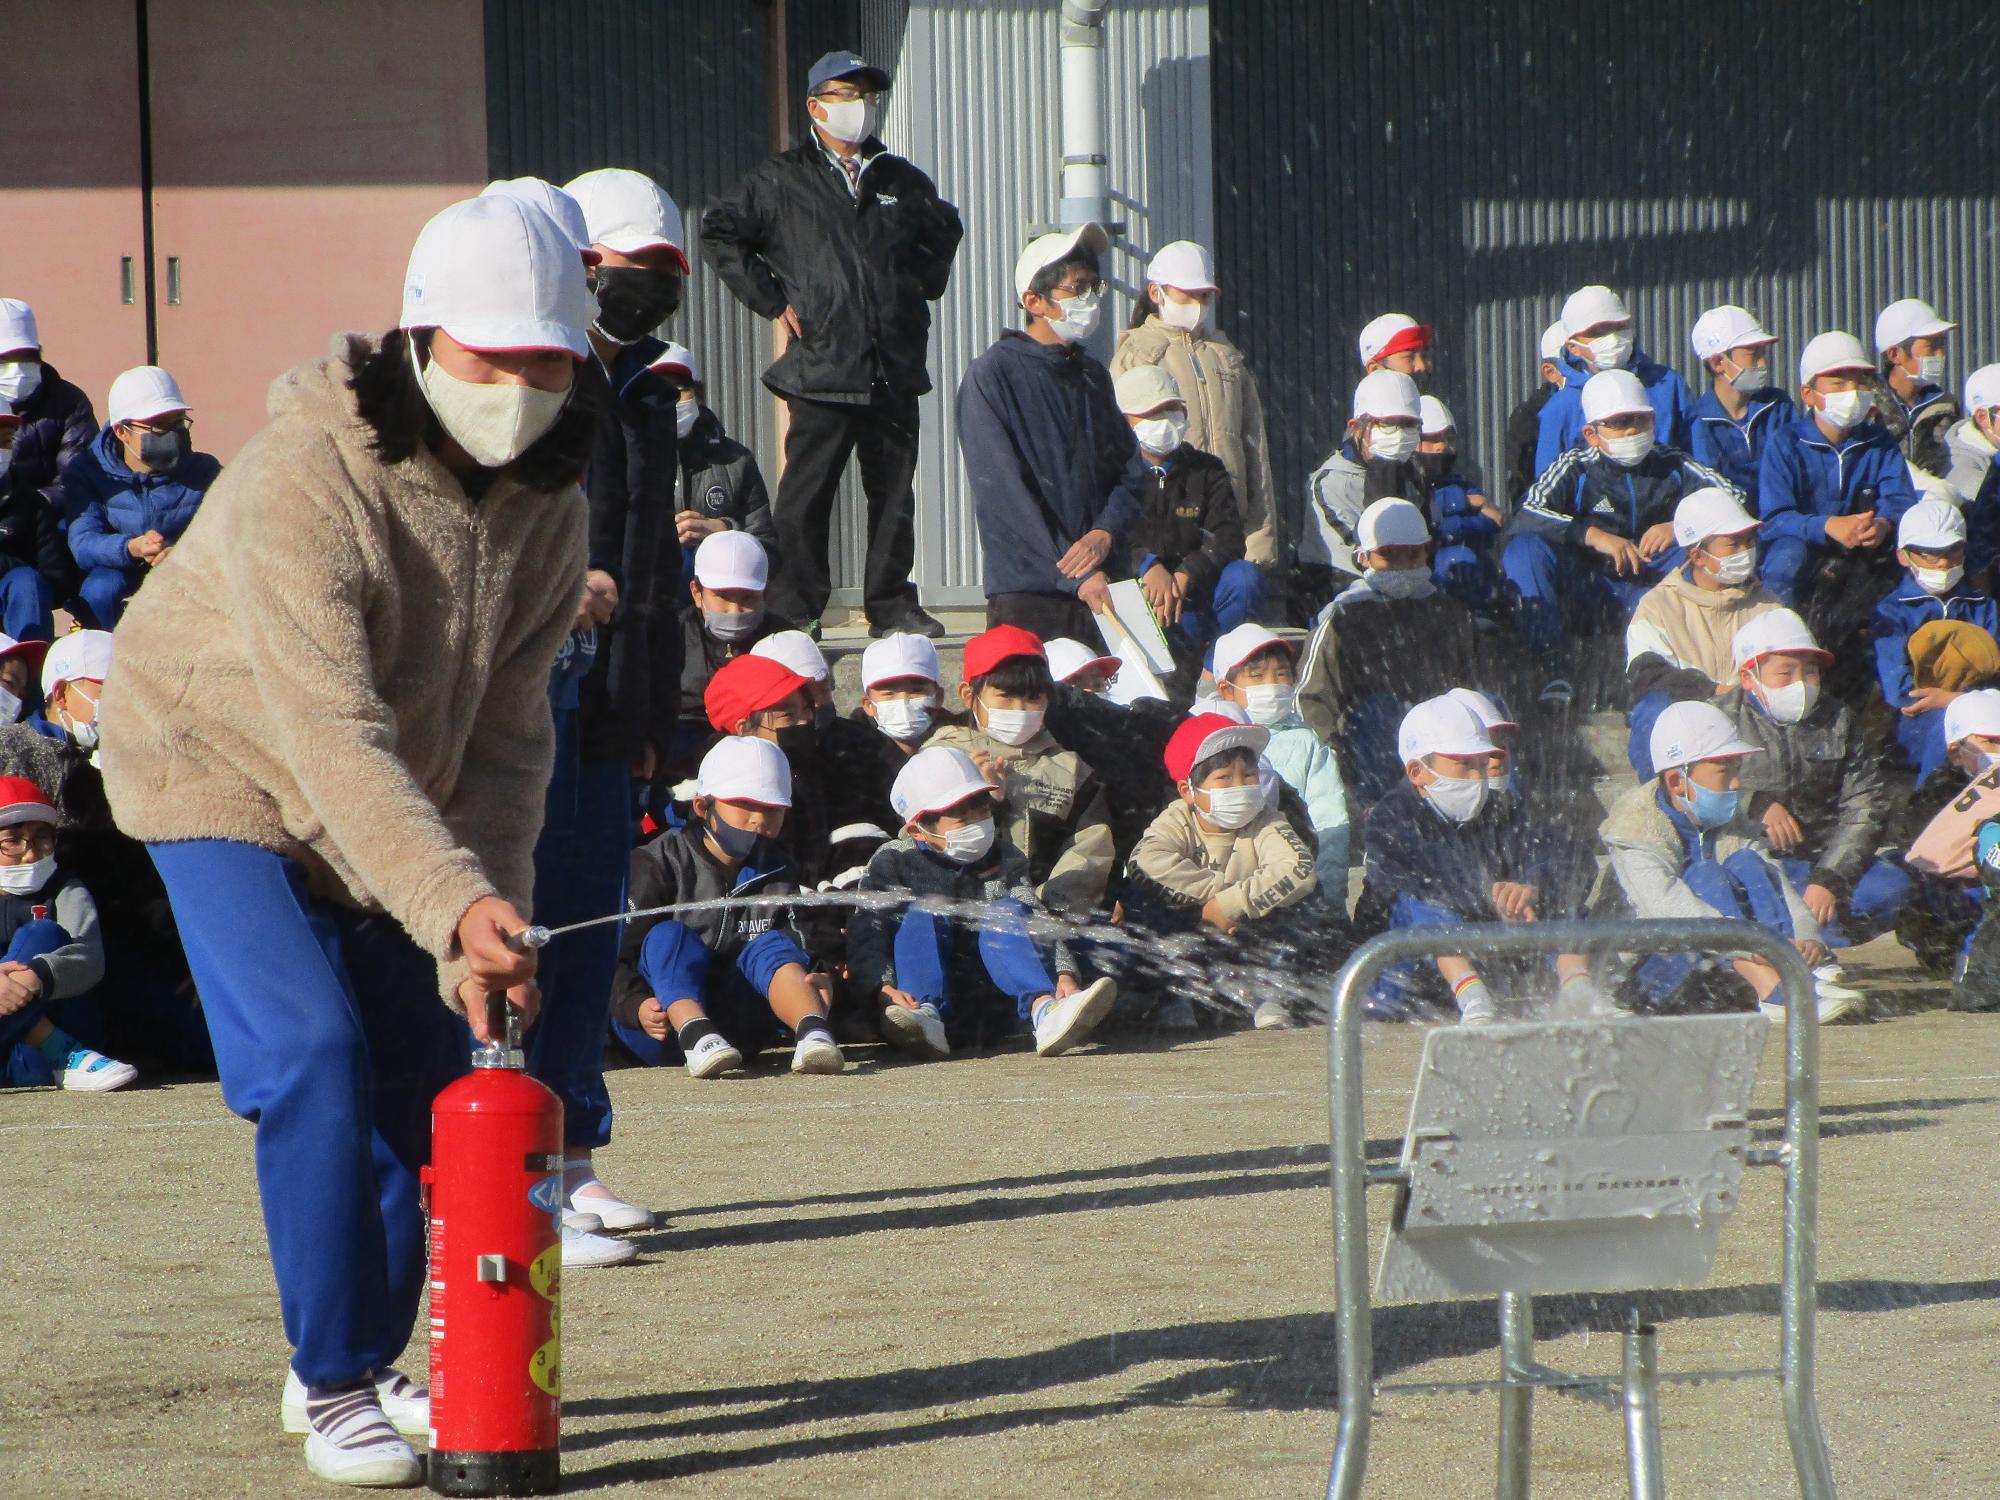 飯豊小学校避難訓練で初期消火のため水消火器を使用した訓練の様子